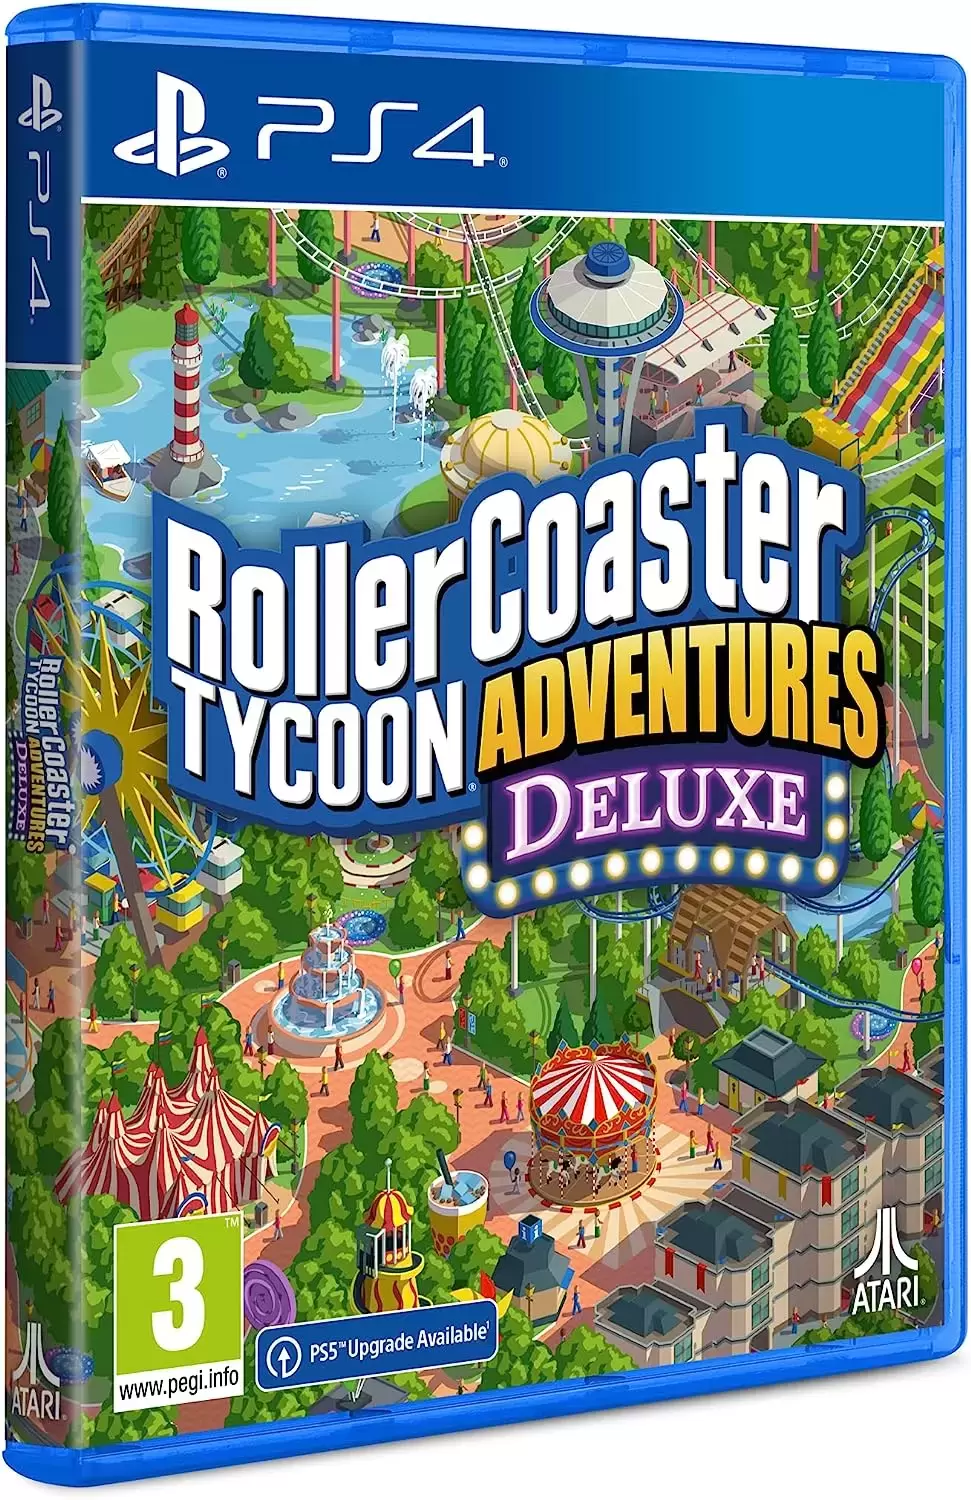 PS4 Games - Rollercoaster Tycoon Adventures Deluxe